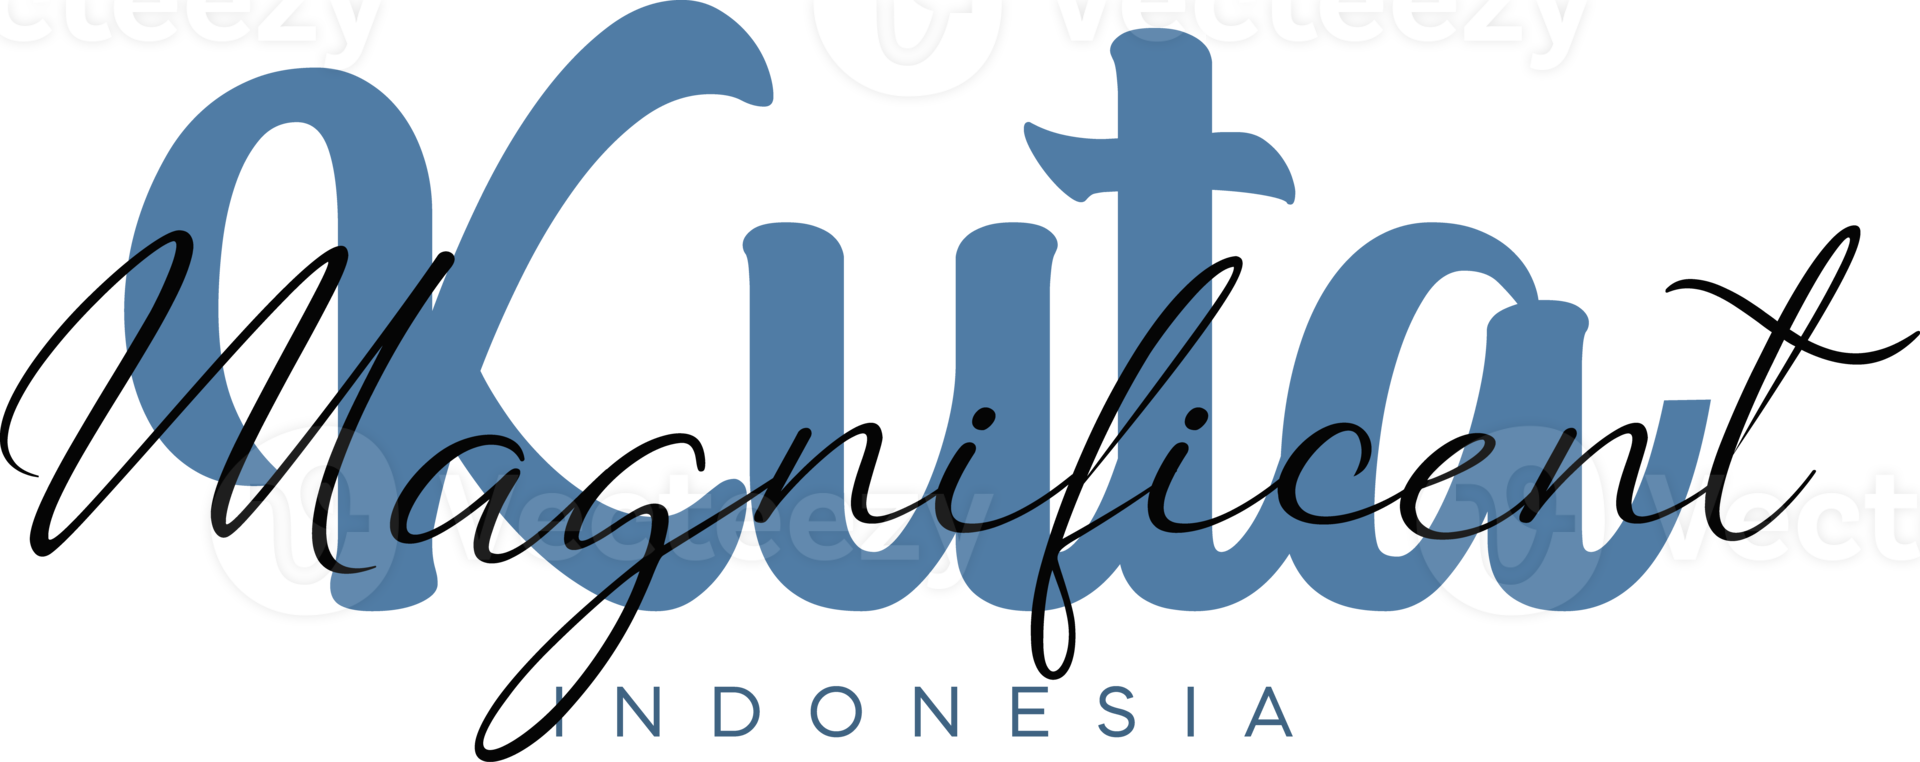 Kuta geweldig Indonesië belettering voor groet kaart, Super goed ontwerp voor ieder doeleinden. typografie poster Sjablonen png